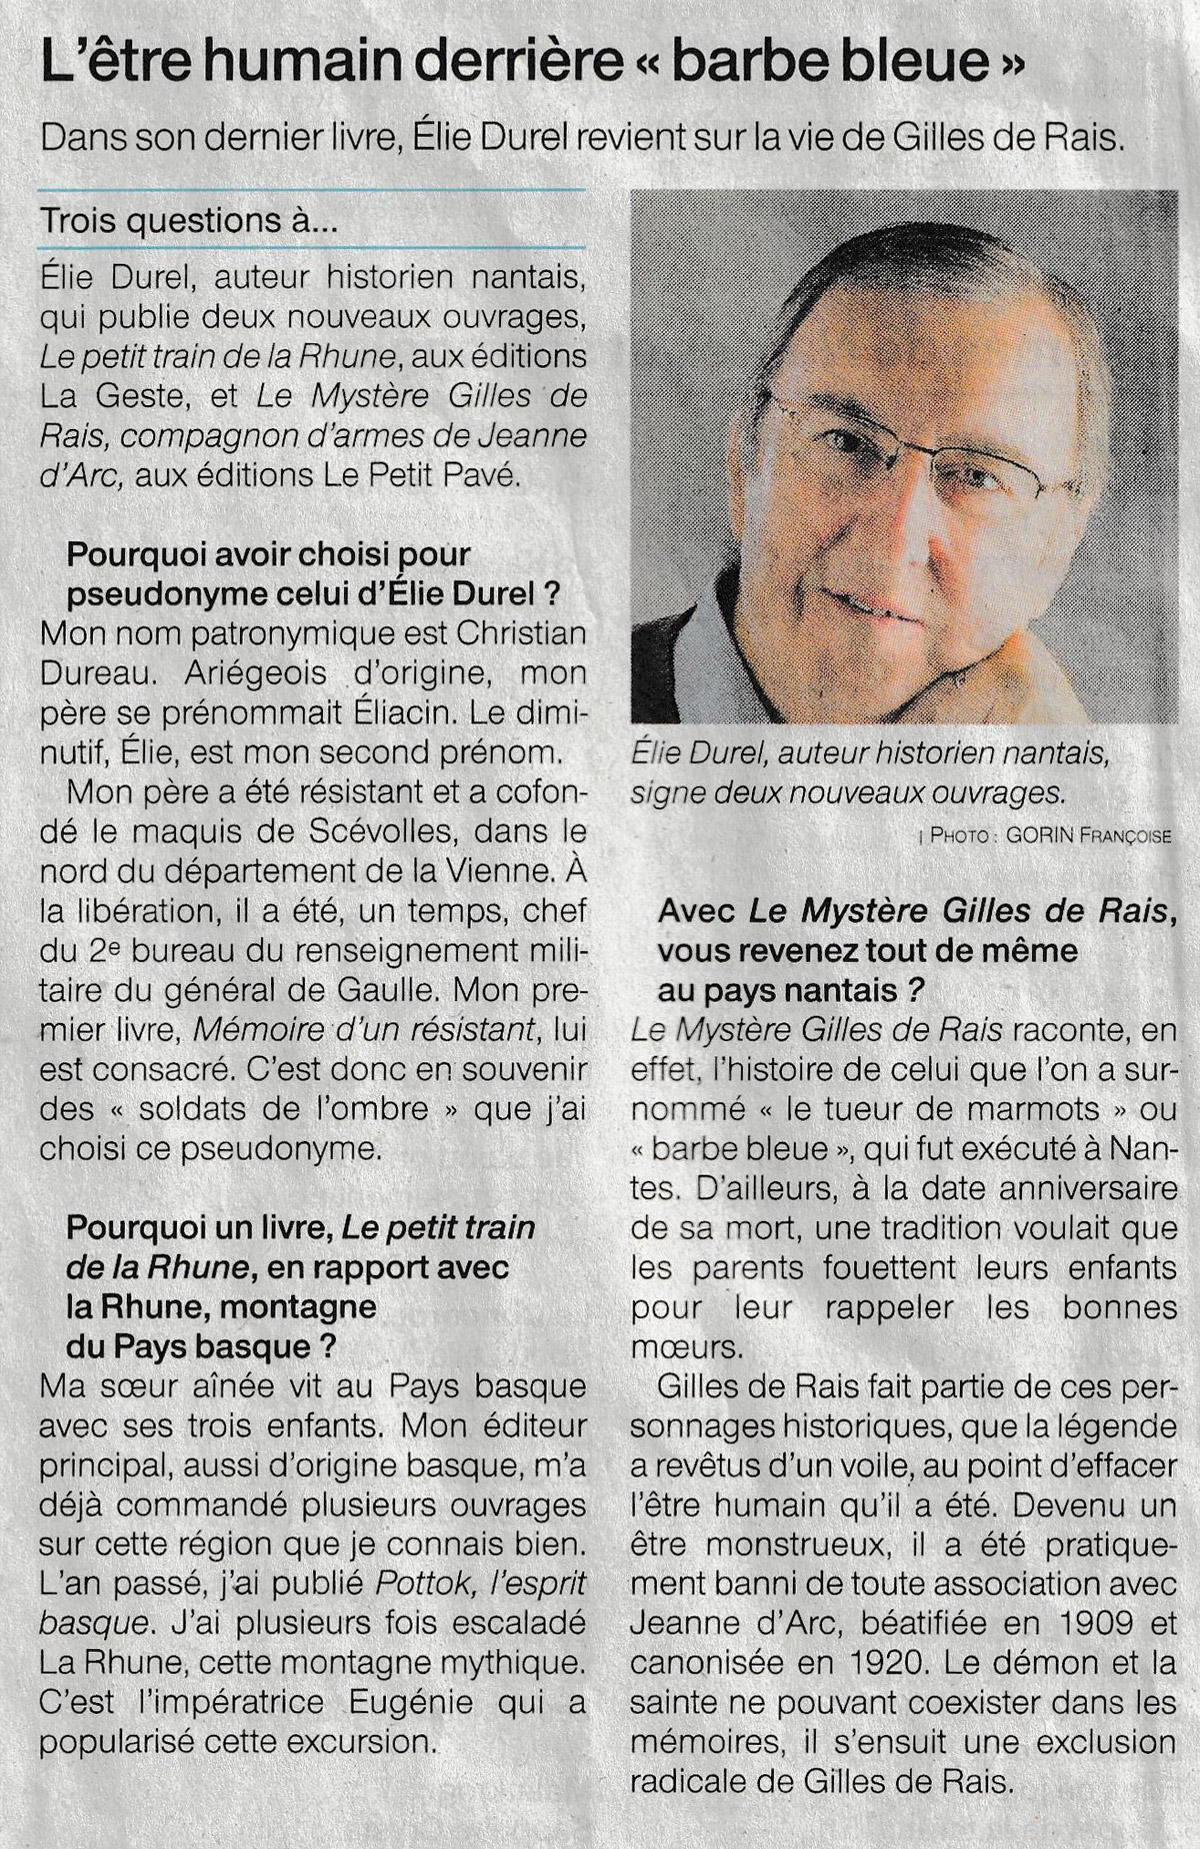 Le mystère Gilles de Rais - Revue de presse revue_de_presse-le_mystere_de_gilles_de_rais-ouest-france-nantes.jpg